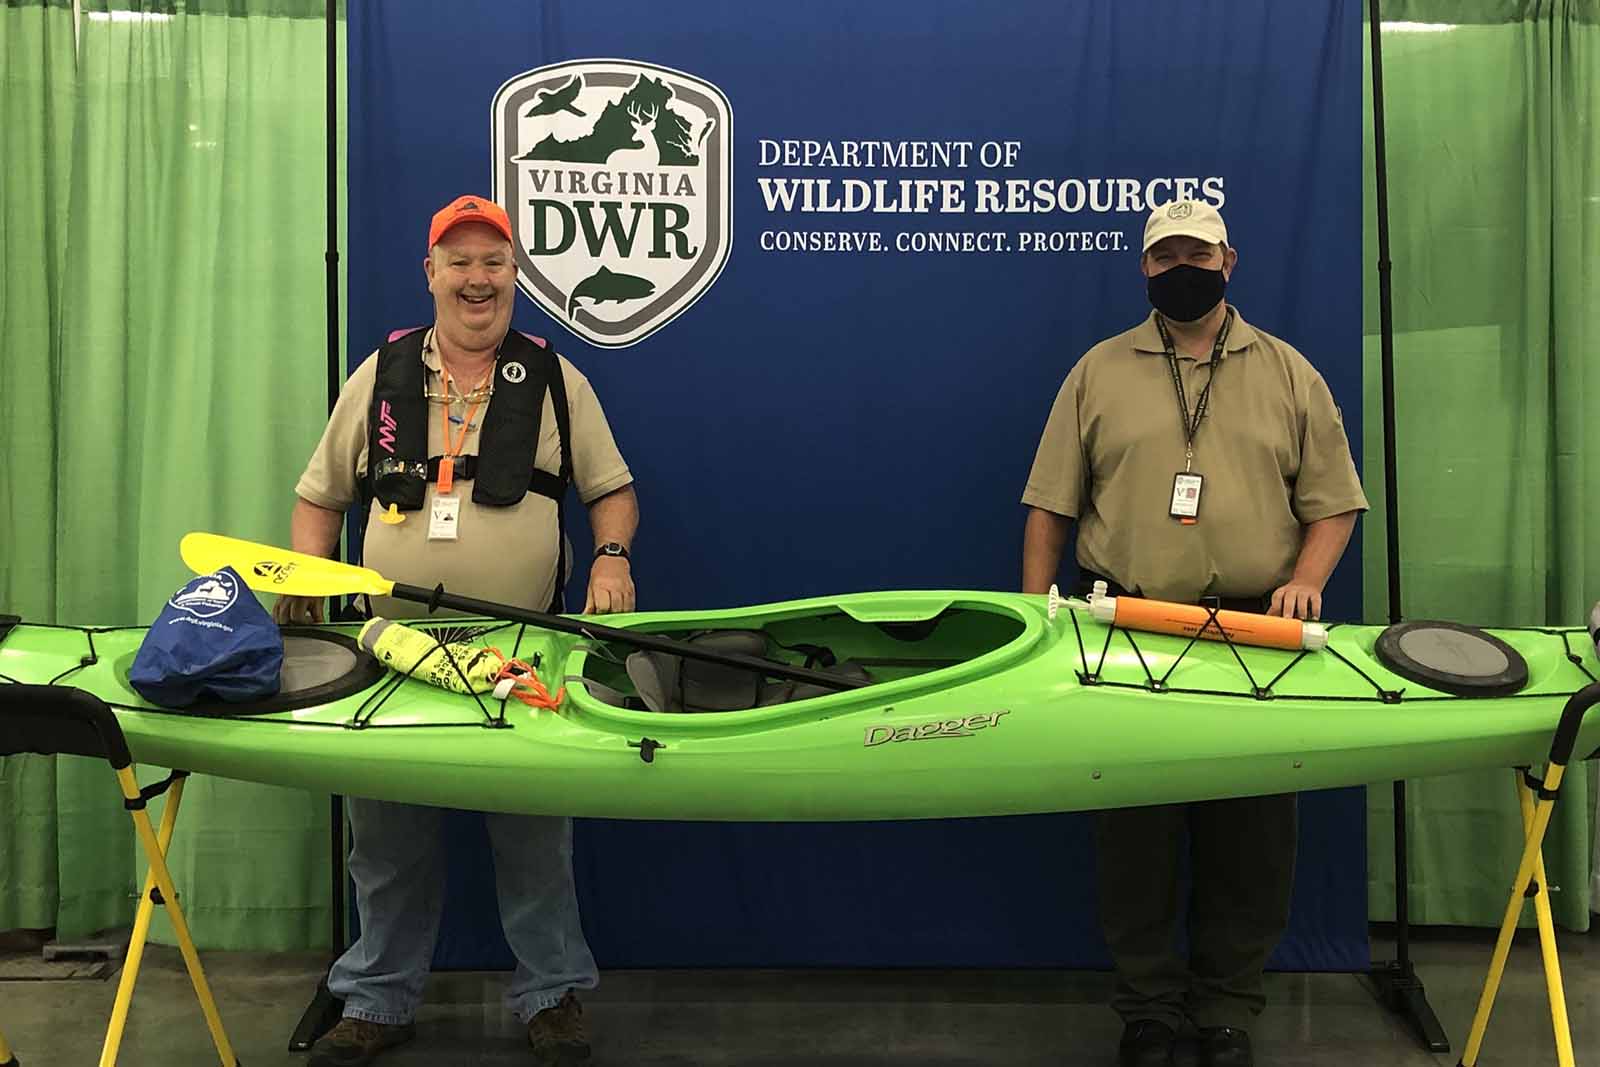 Two volunteers standing behind a green kayak